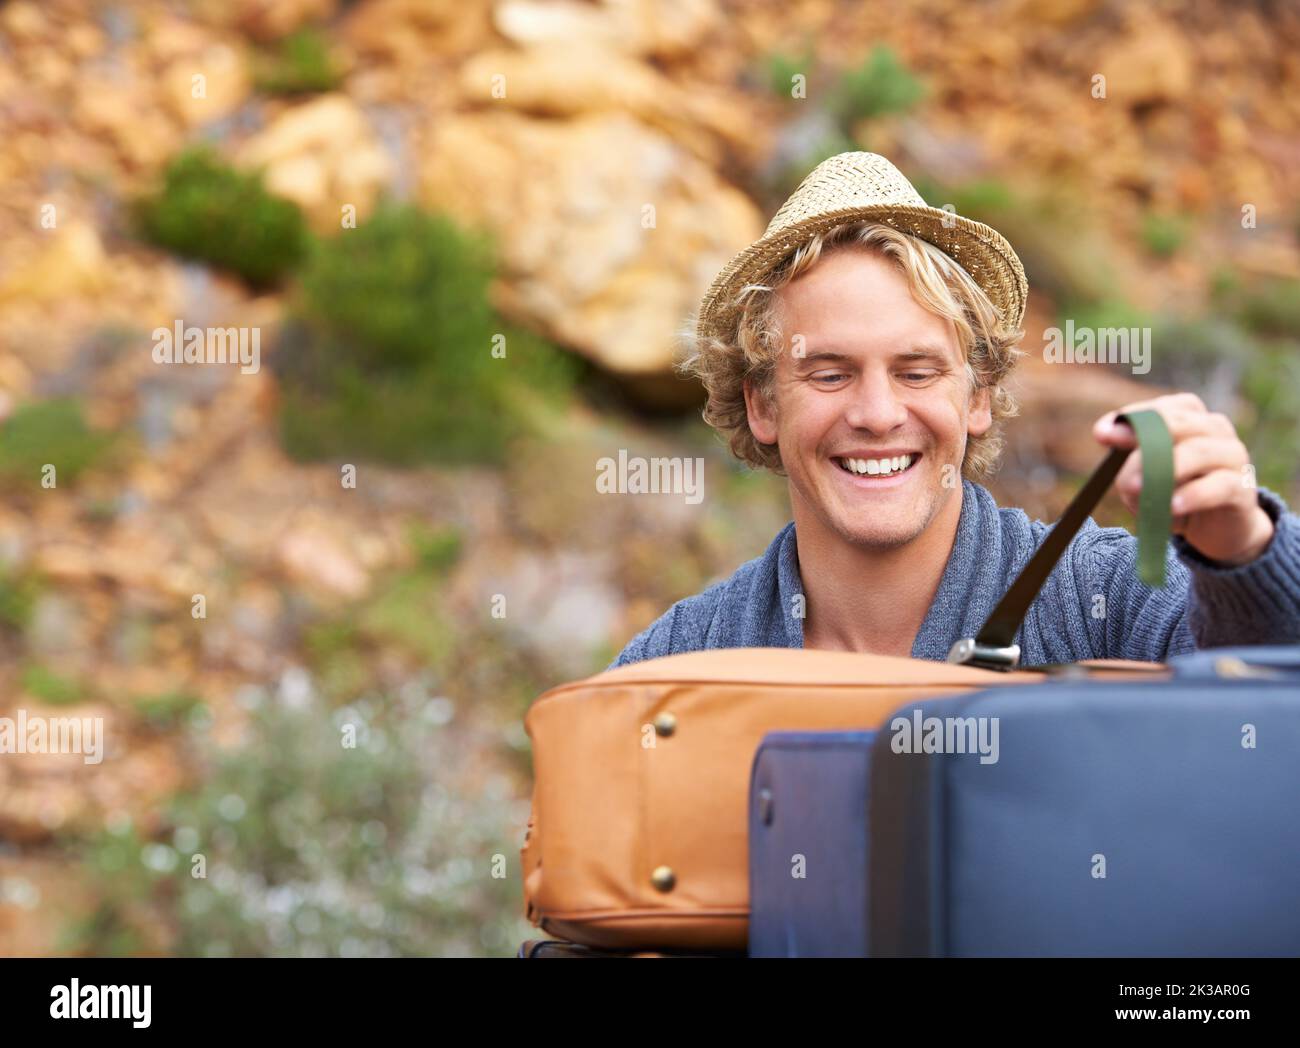 Déchargement de ses bagages. Un homme blond déchargeant ses bagages lors d'un voyage en camping. Banque D'Images